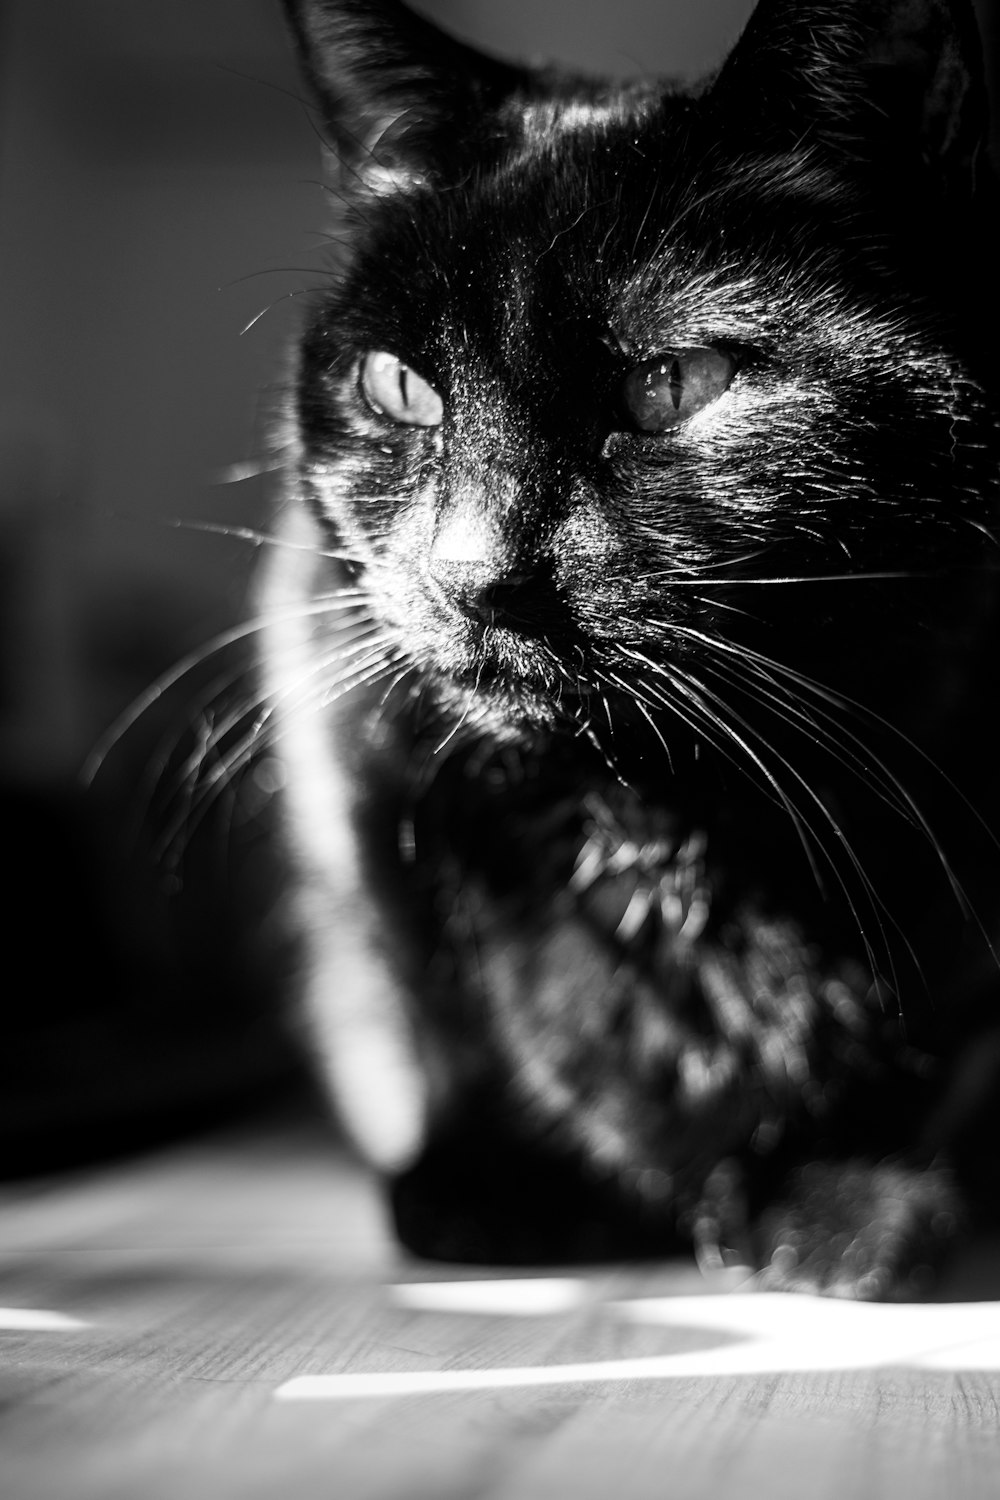 グレースケール写真の黒と白の猫の写真 Unsplashで見つけるペットの無料写真